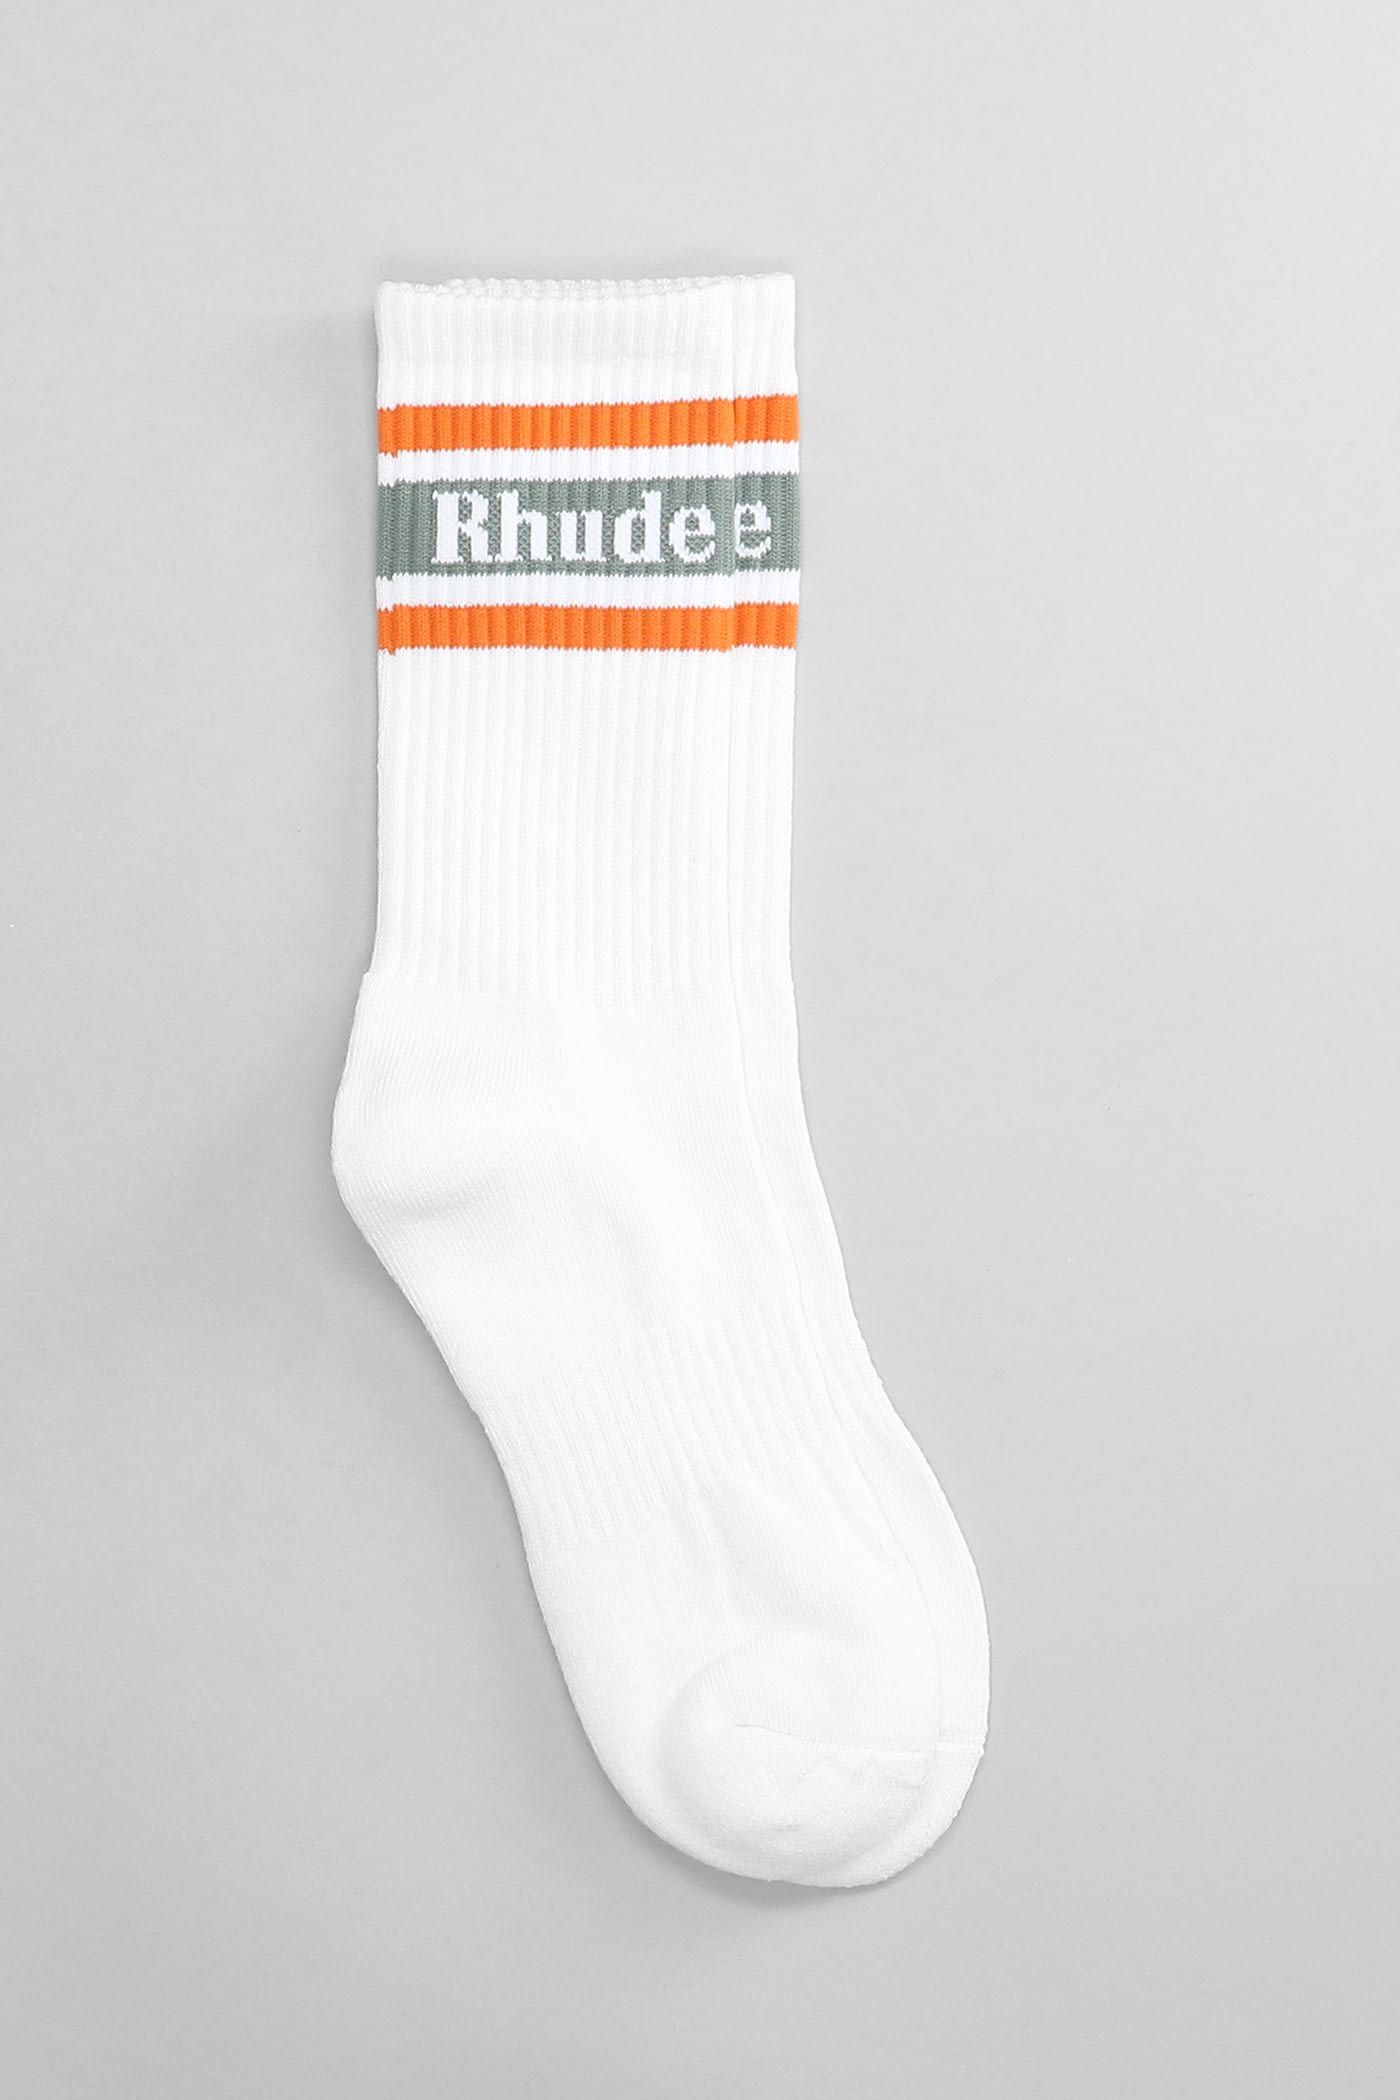 Rhude Socks In White Cotton